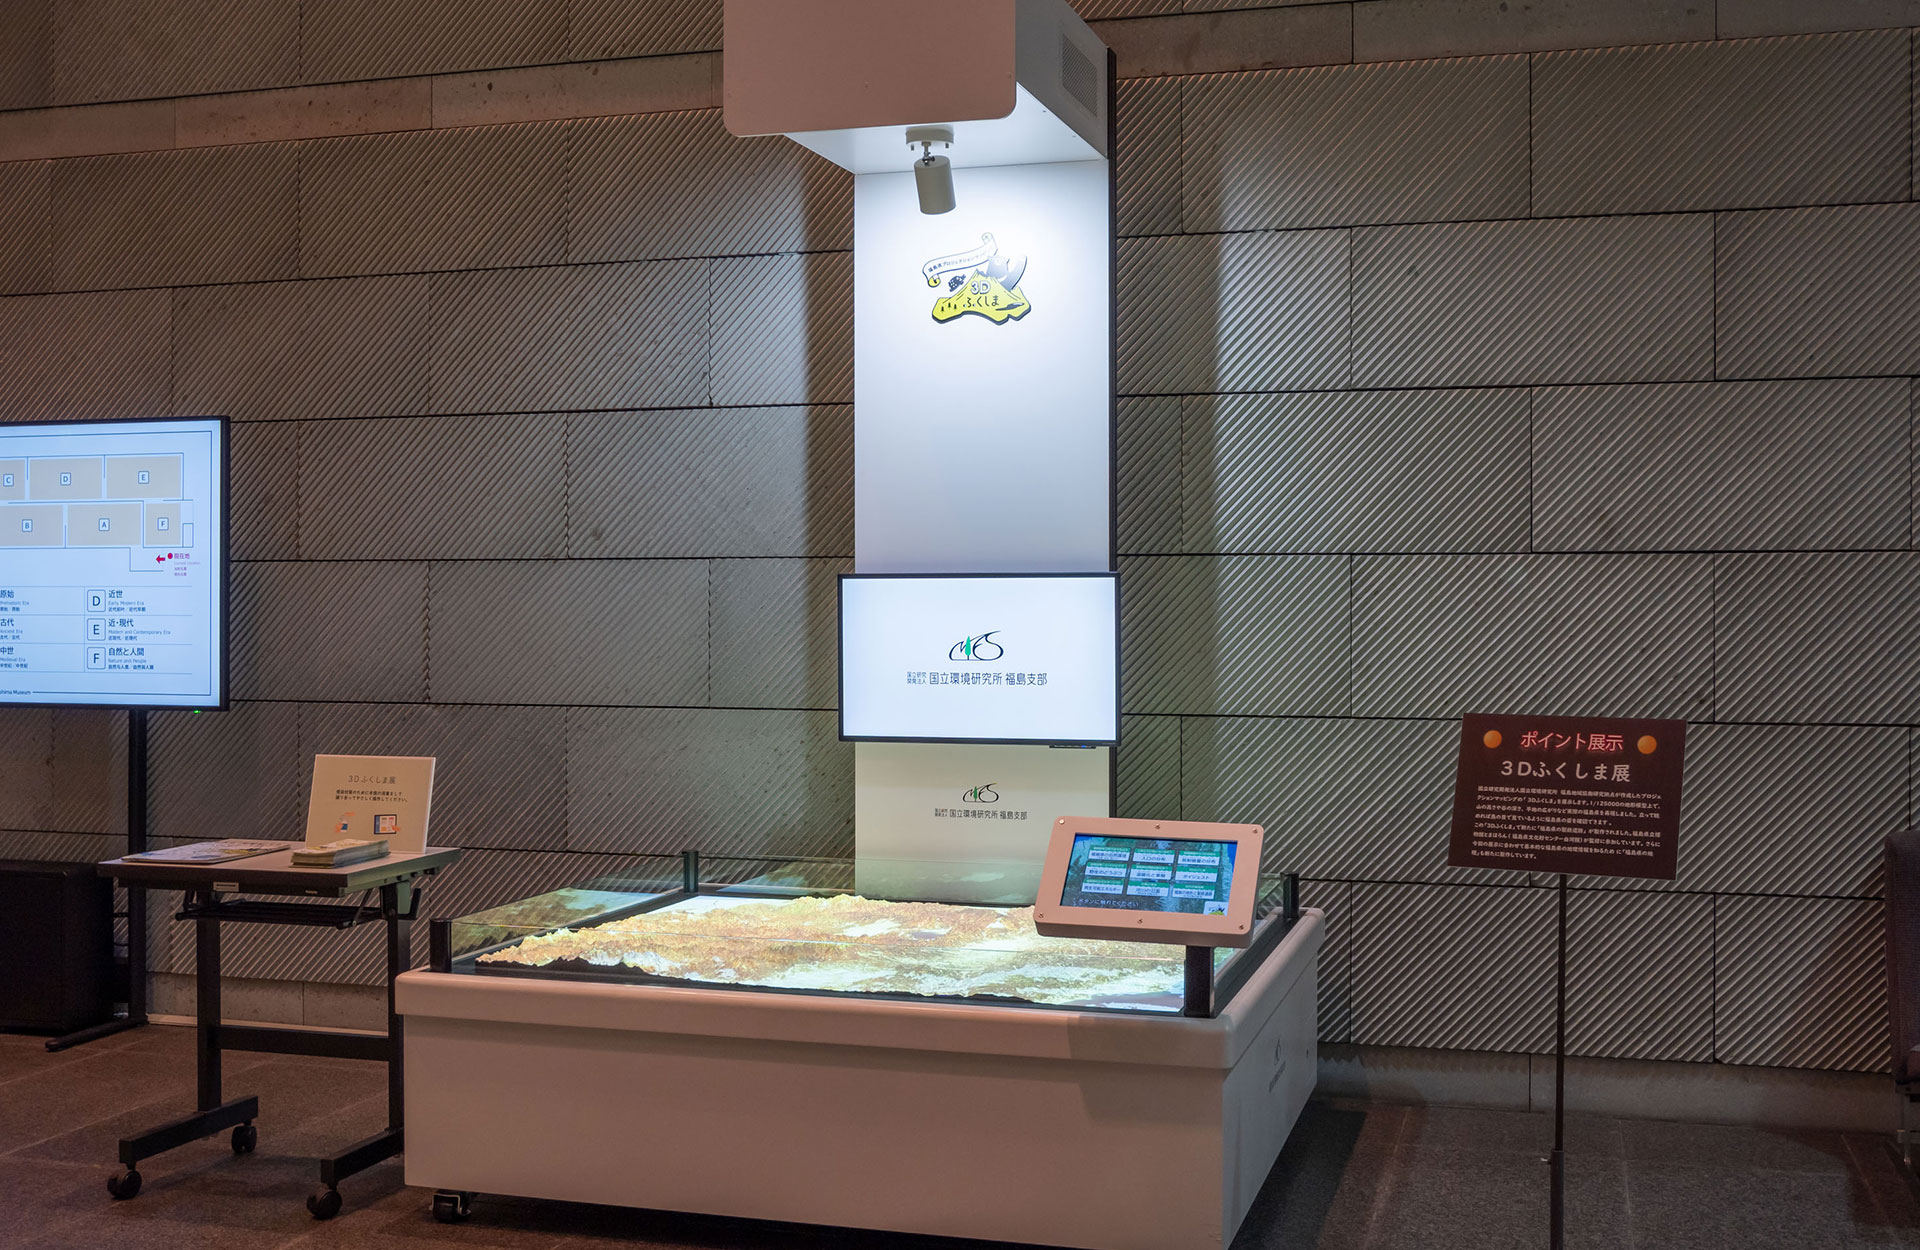 福島県立博物館に設置された3Dふくしまの写真